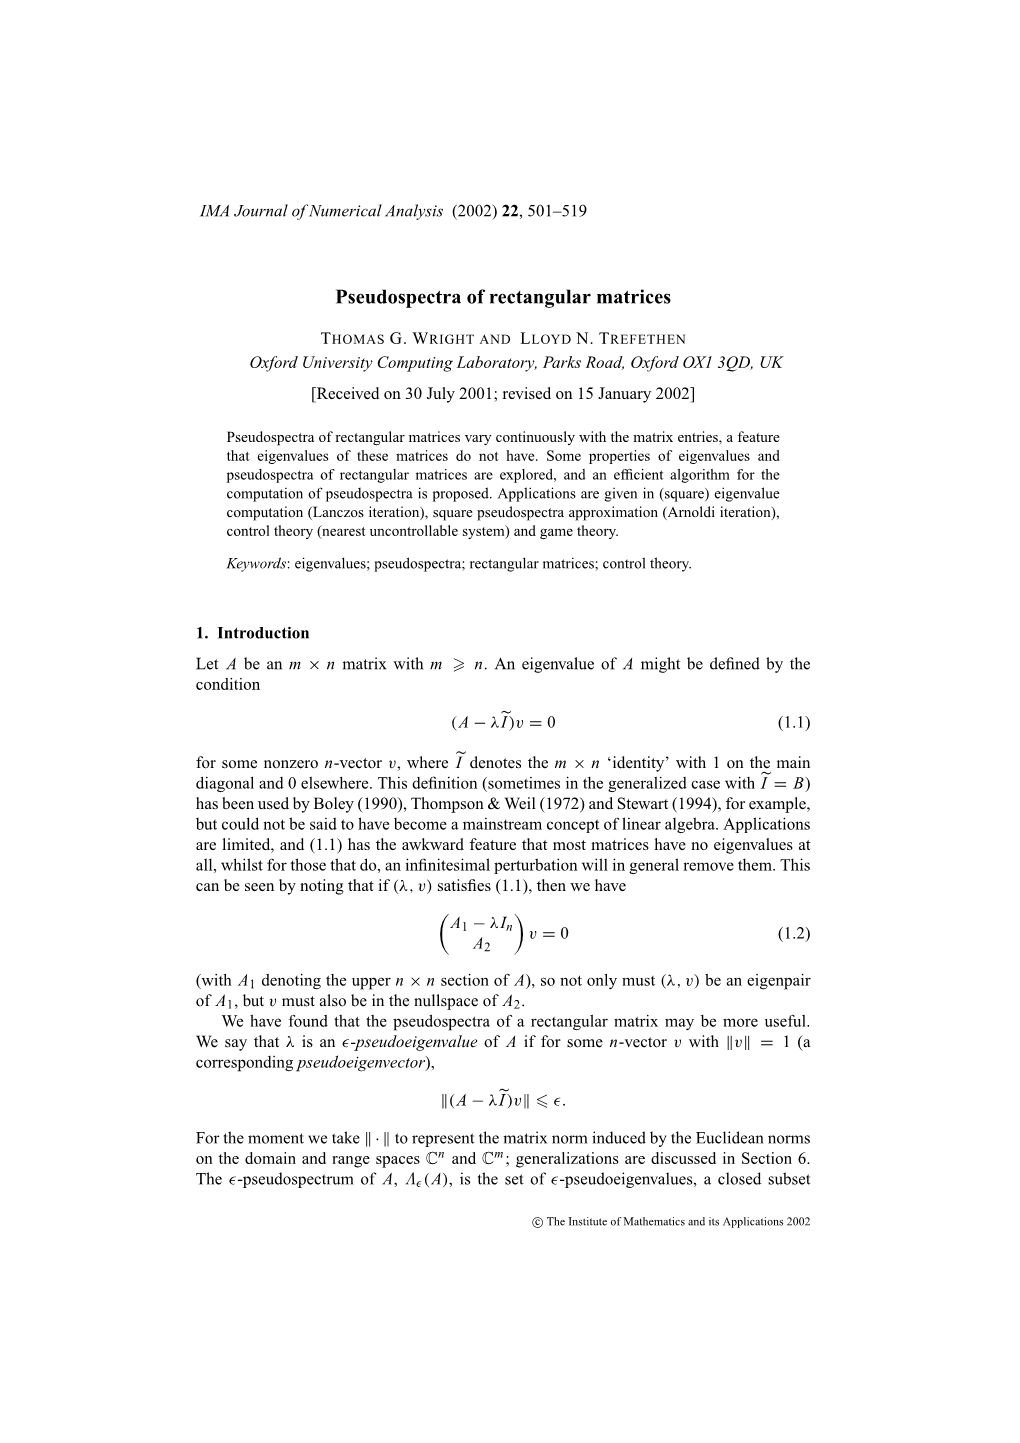 Pseudospectra of Rectangular Matrices